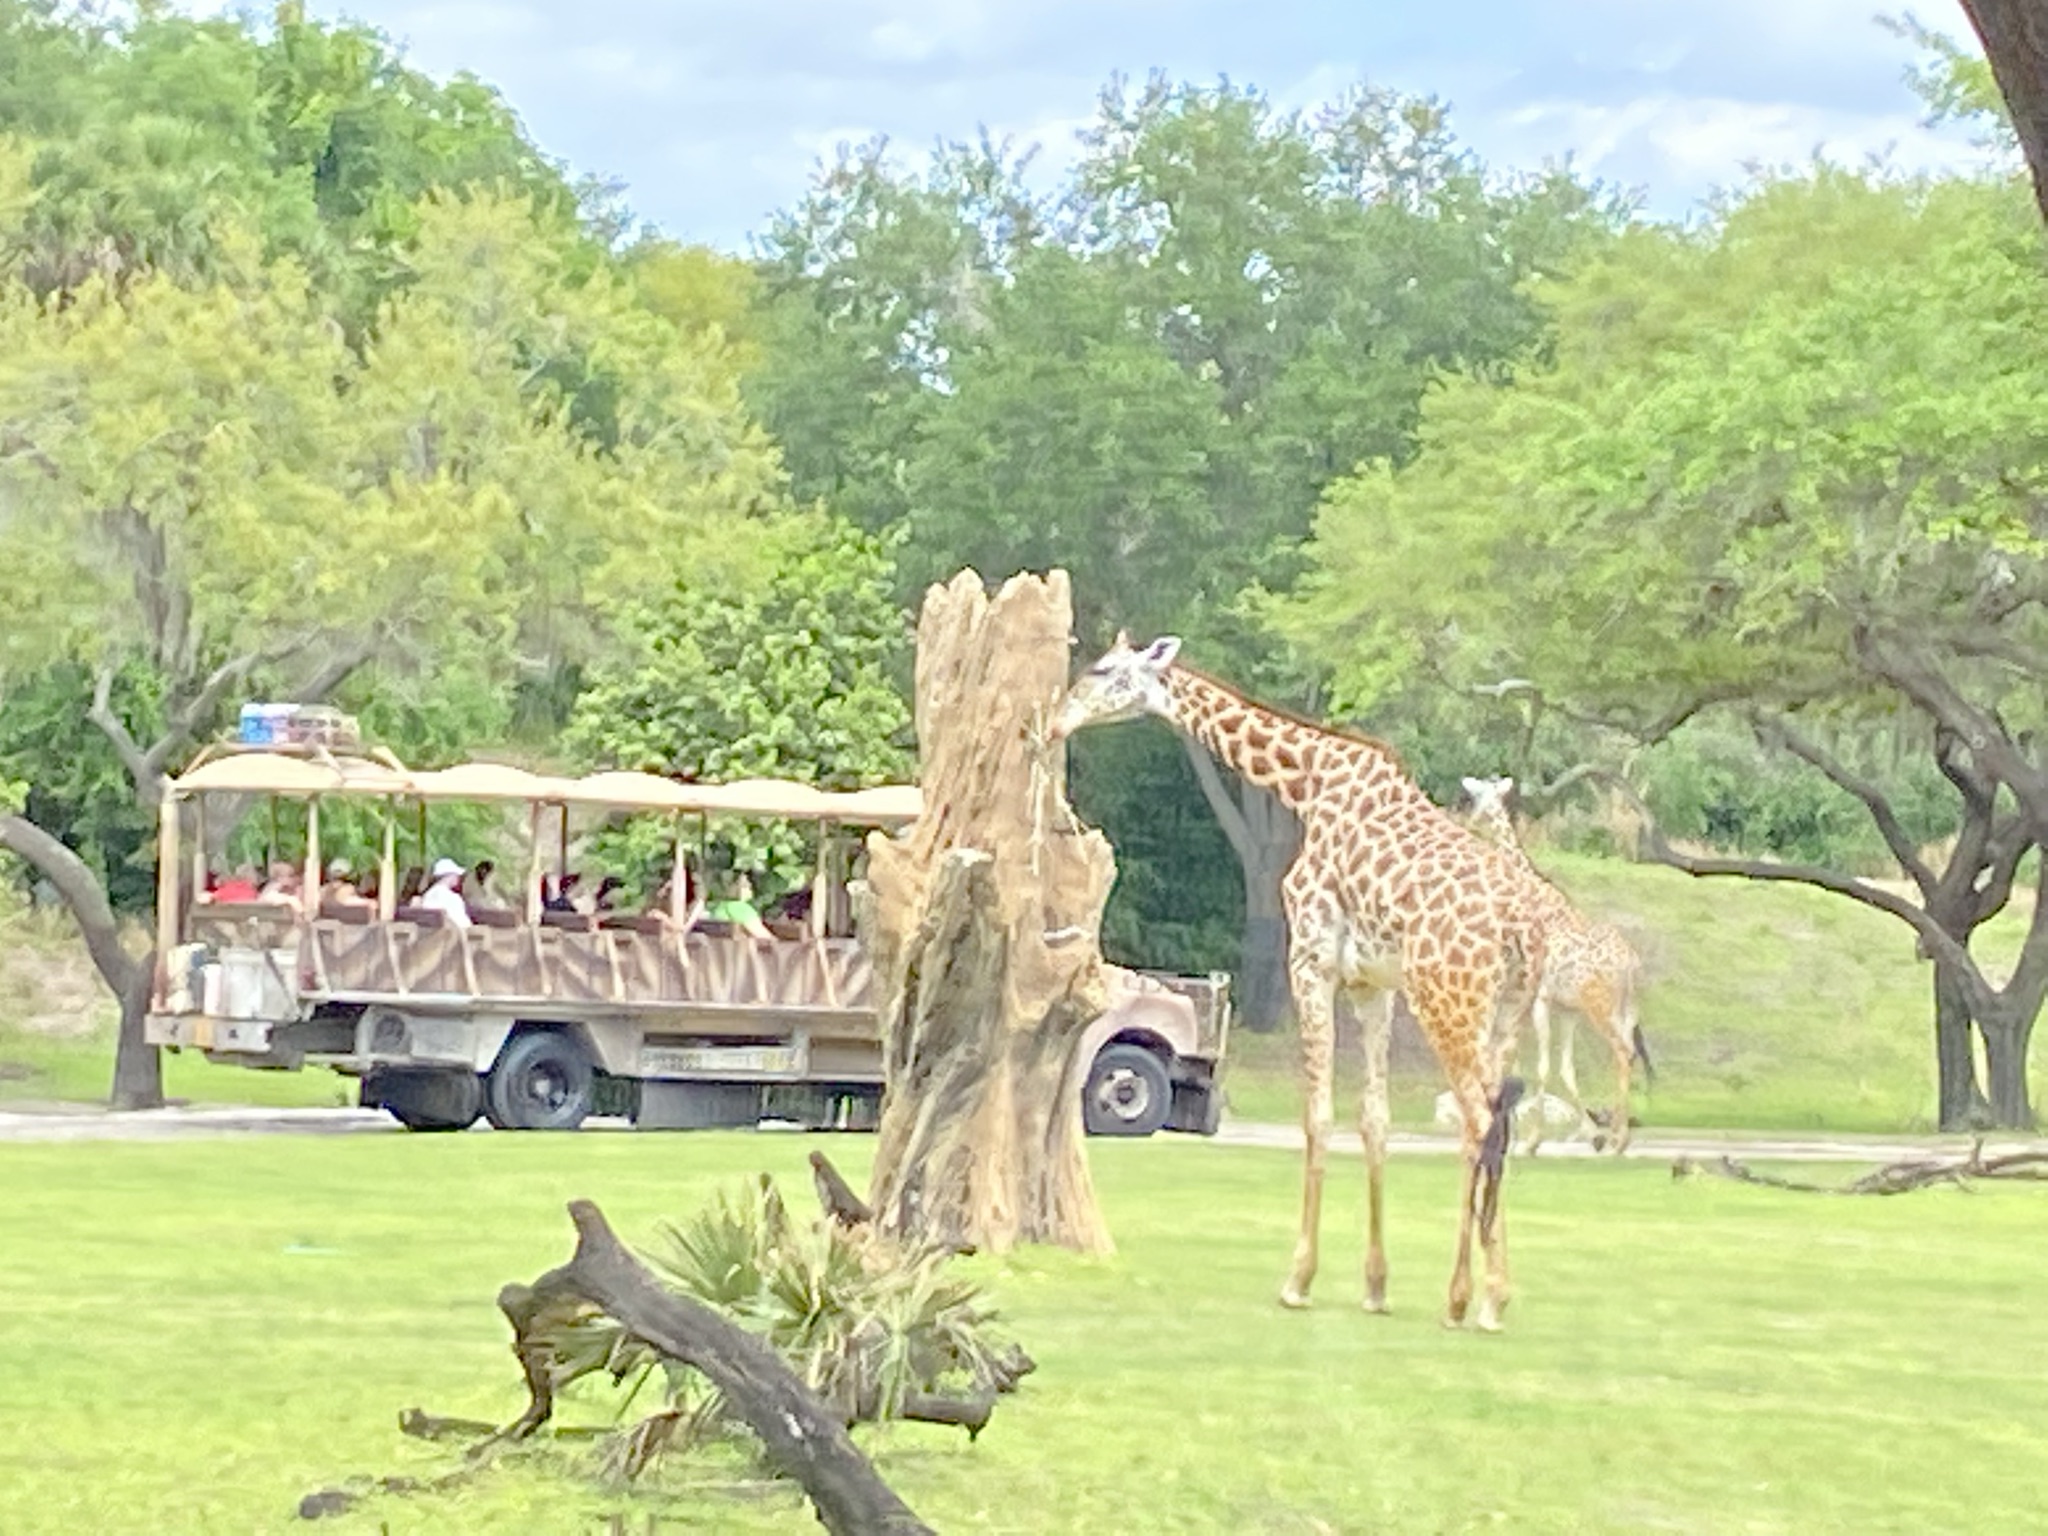 Kilamanjaro Safari in Animal Kingdom Park at Disney World Florida